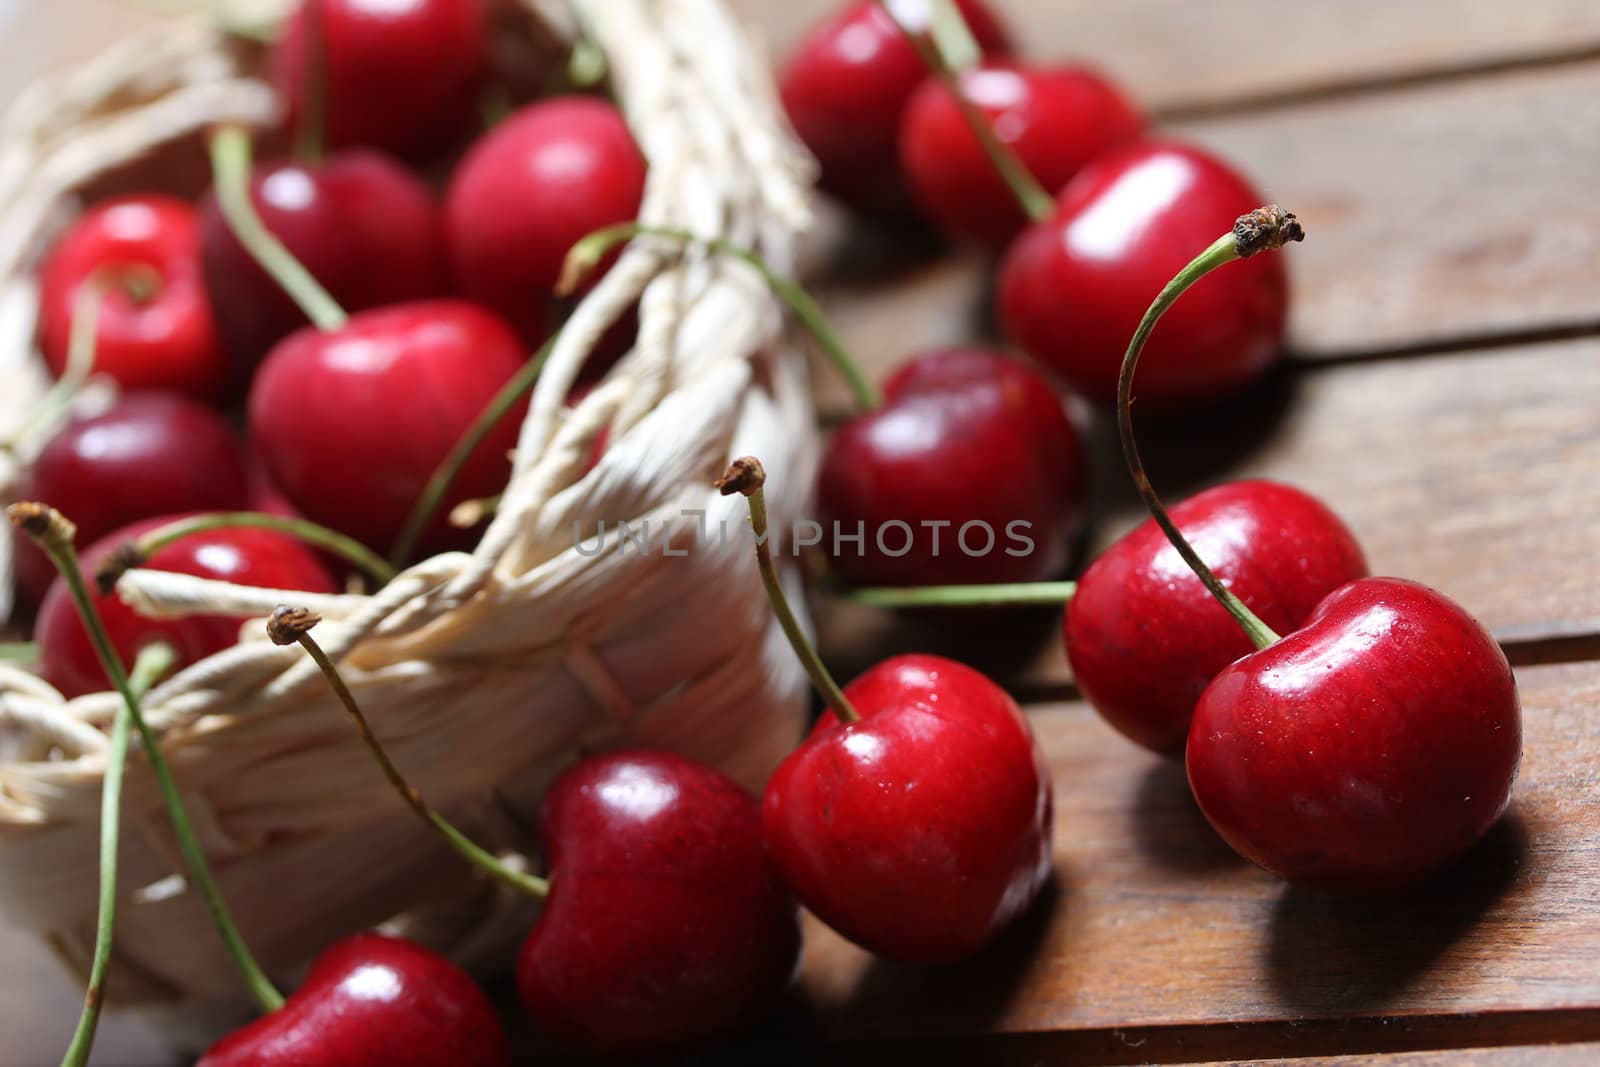 cherries in a bag by Teka77